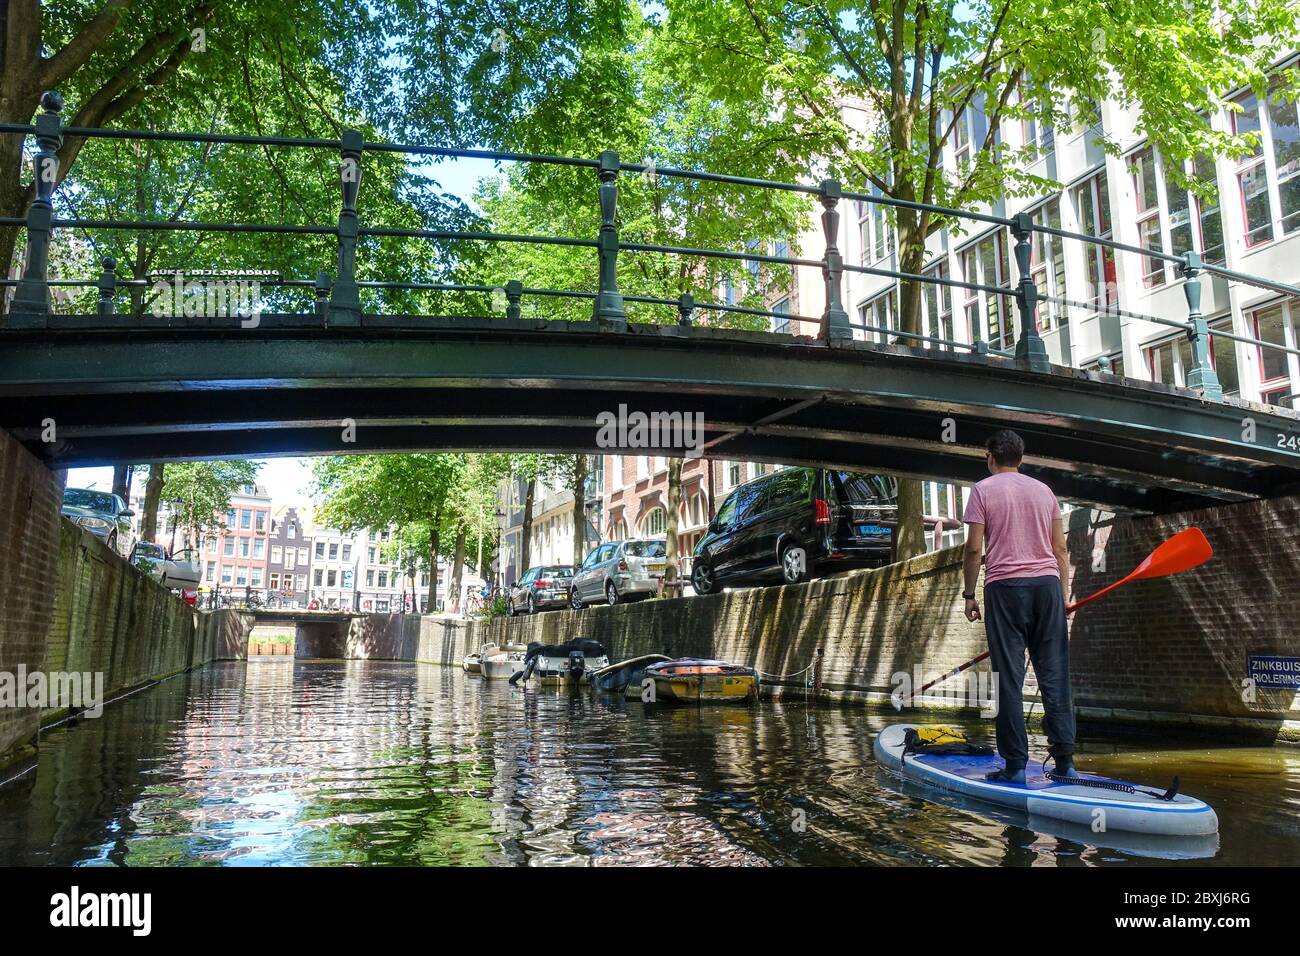 Homme sur un SUP (stand-up paddle board) sur les canaux dans le centre de la ville tranquille d'Amsterdam (pays-Bas) pendant la crise Covid-19 Banque D'Images